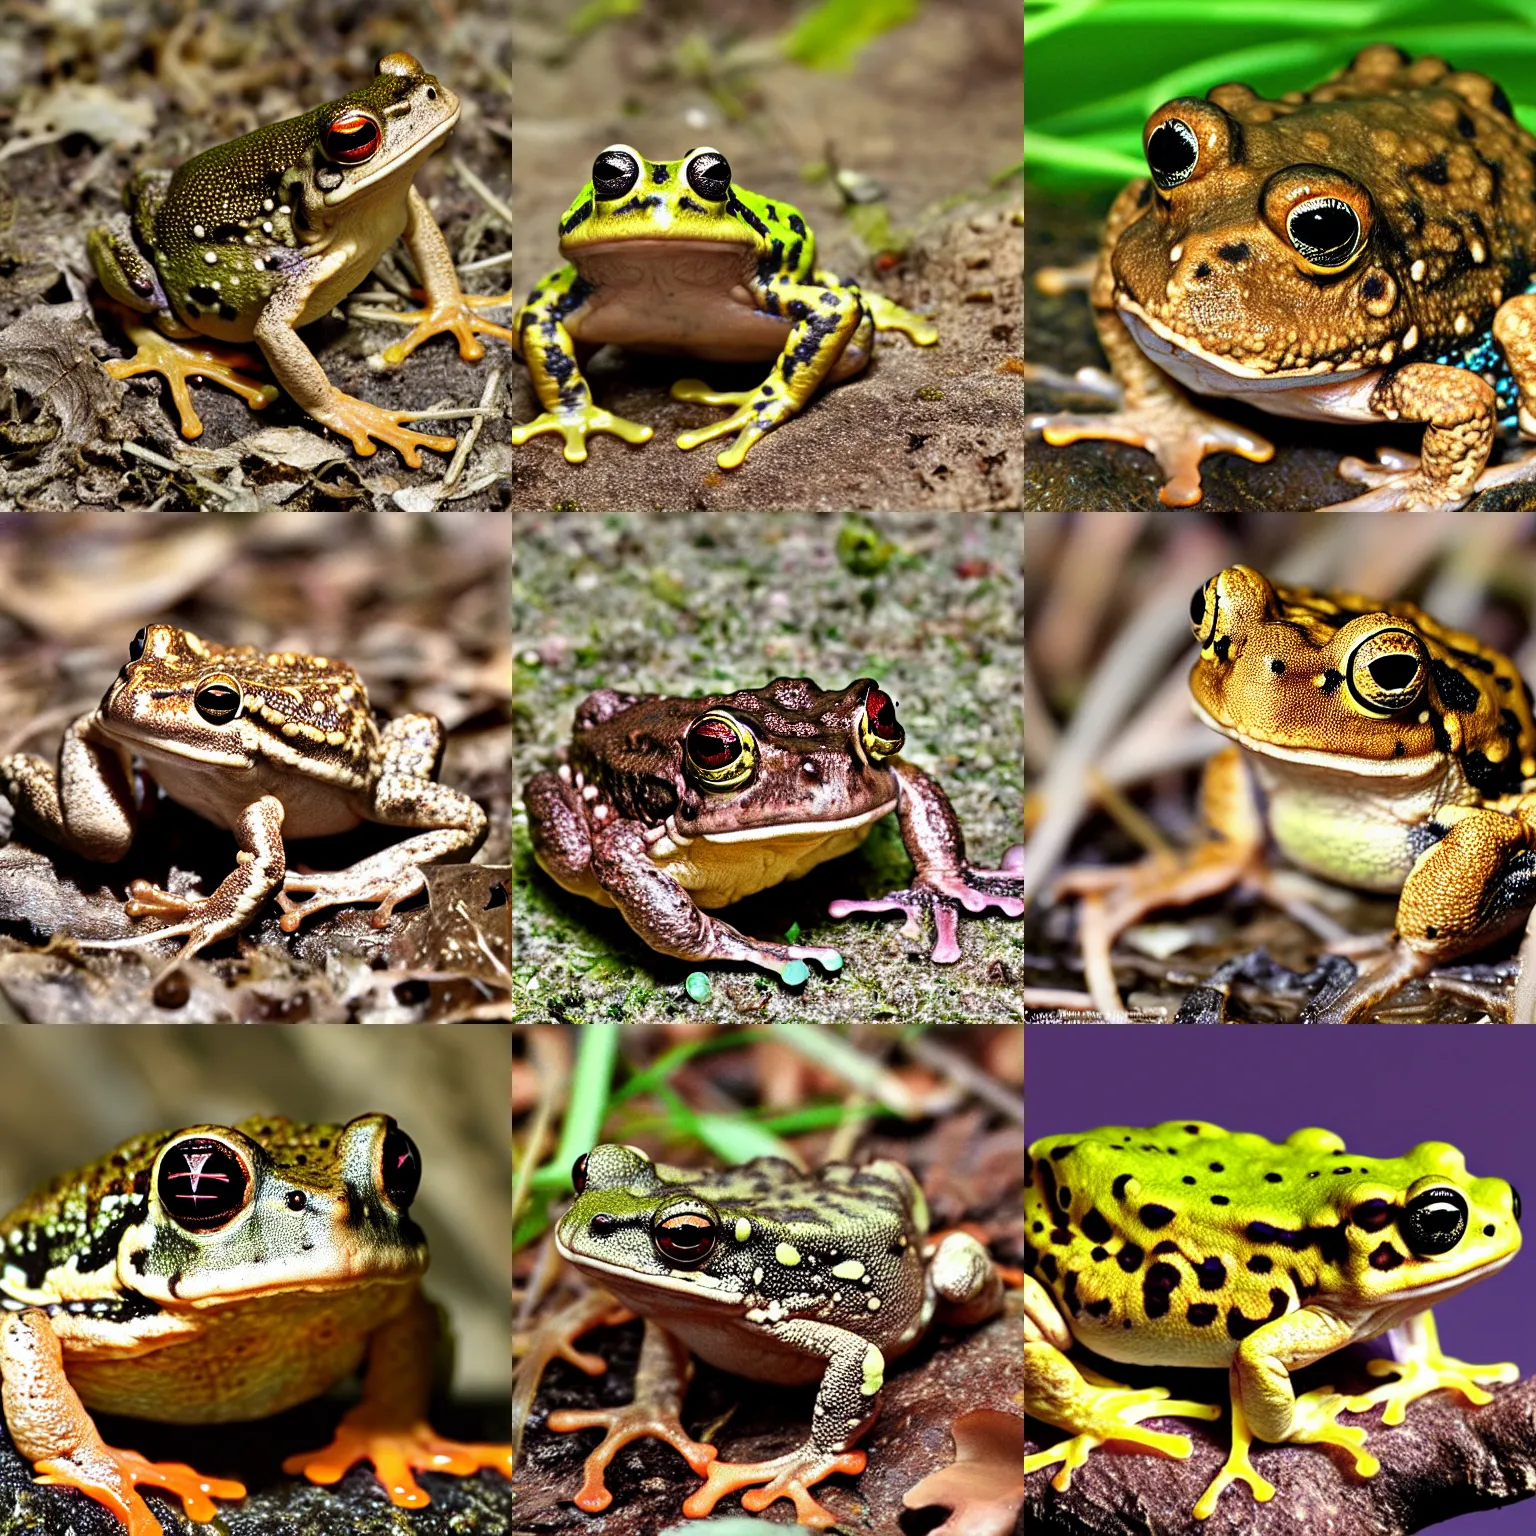 Prompt: mushroom frog toad hybrid